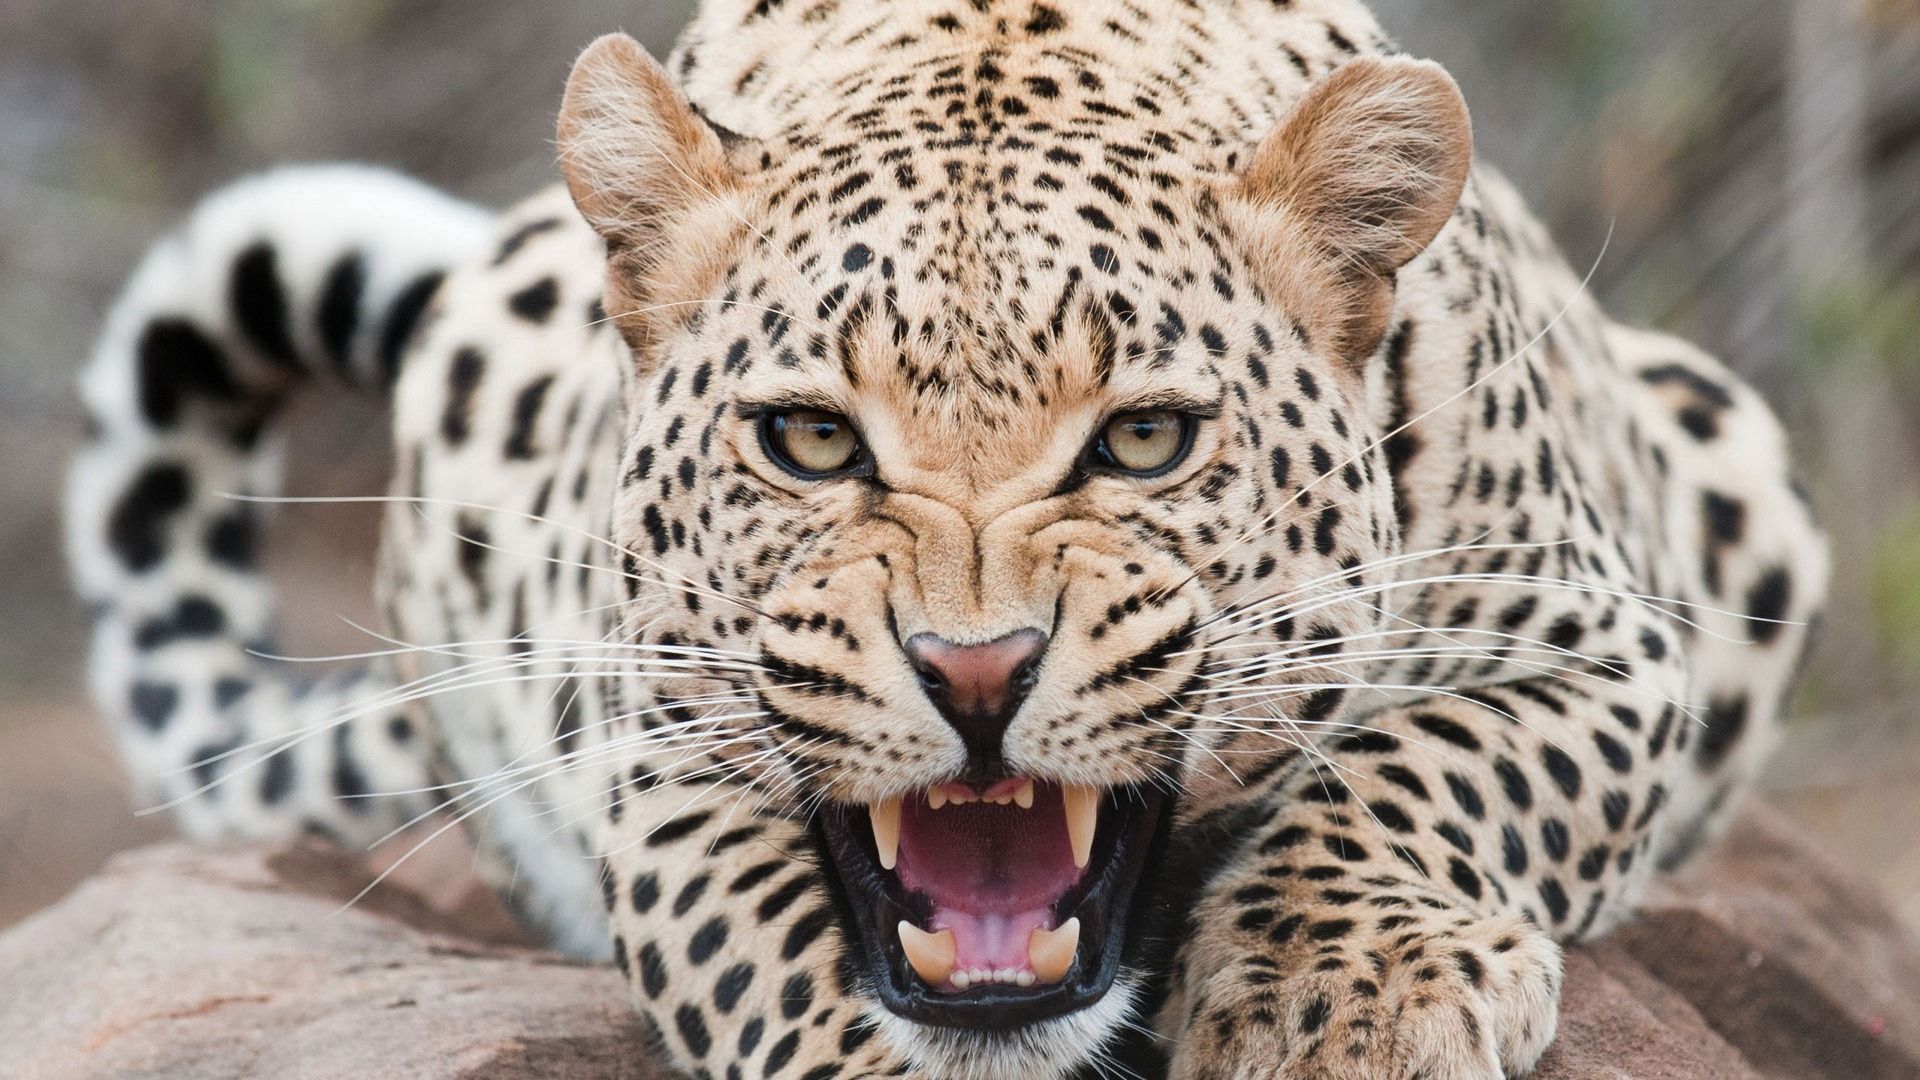 aggression, muzzle, grin, predator, animals, leopard